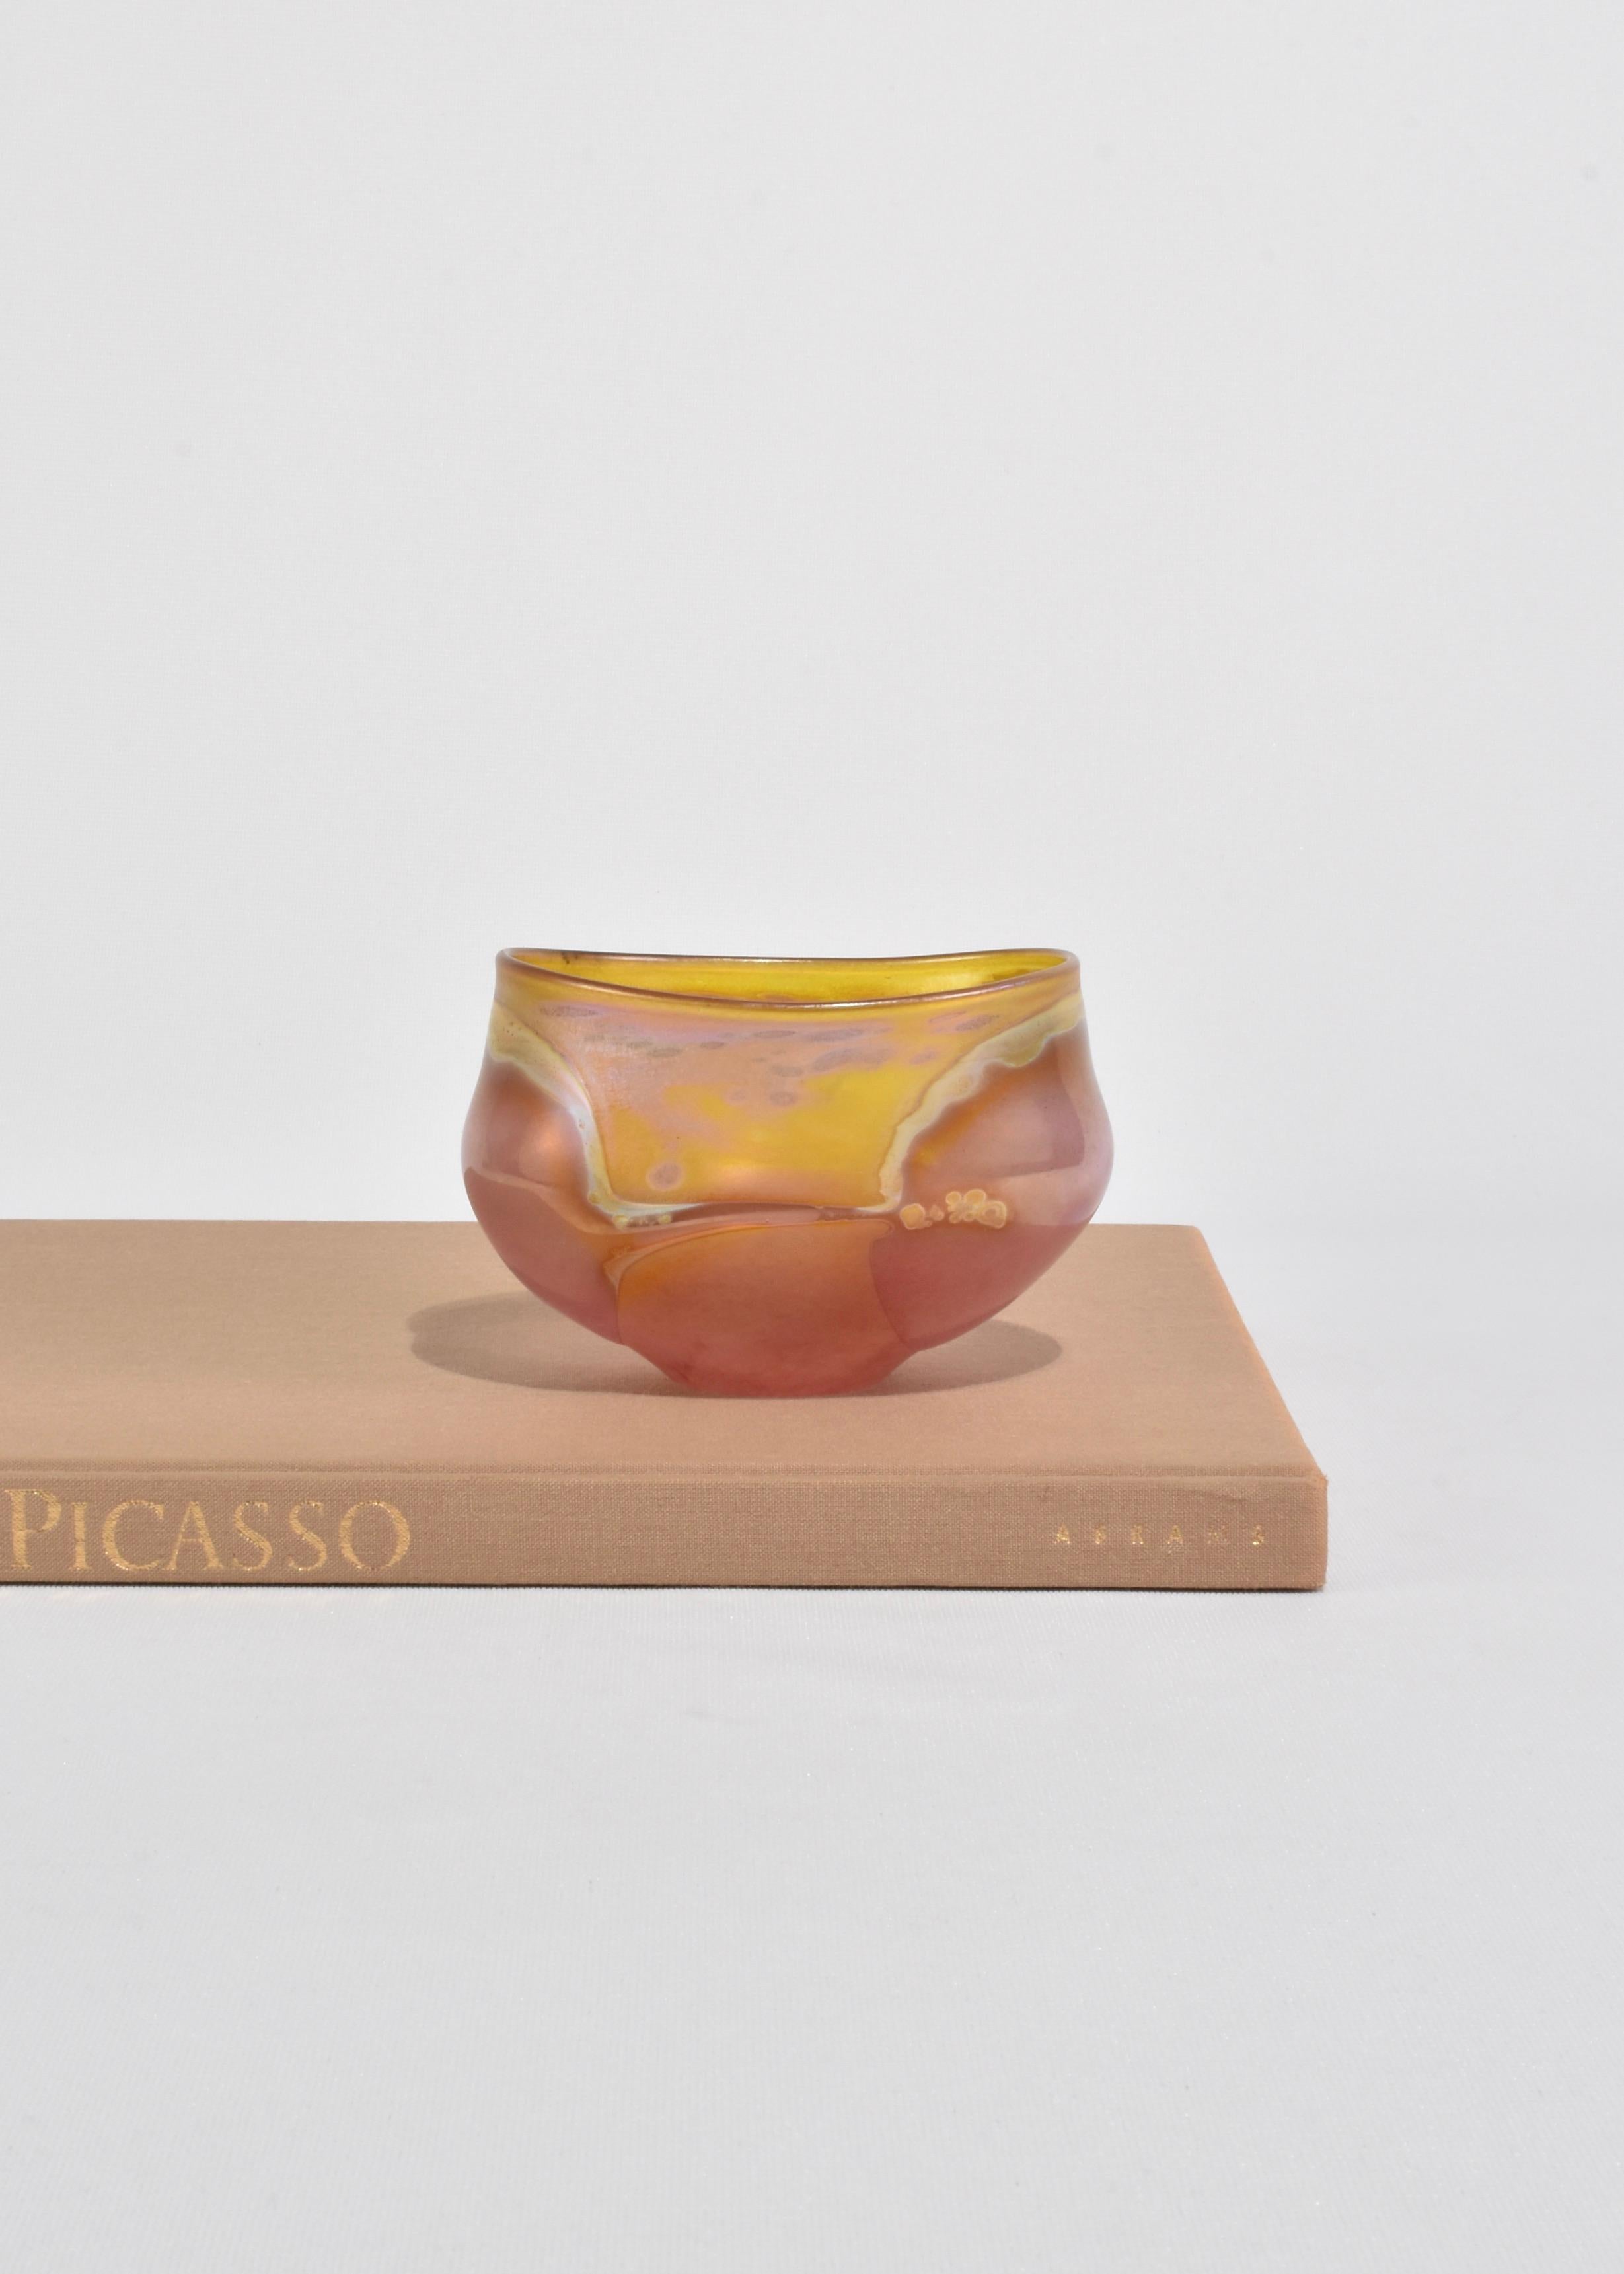 Magnifique petit bol en verre soufflé irisé jaune et rose. Signé Coleman, 1999.